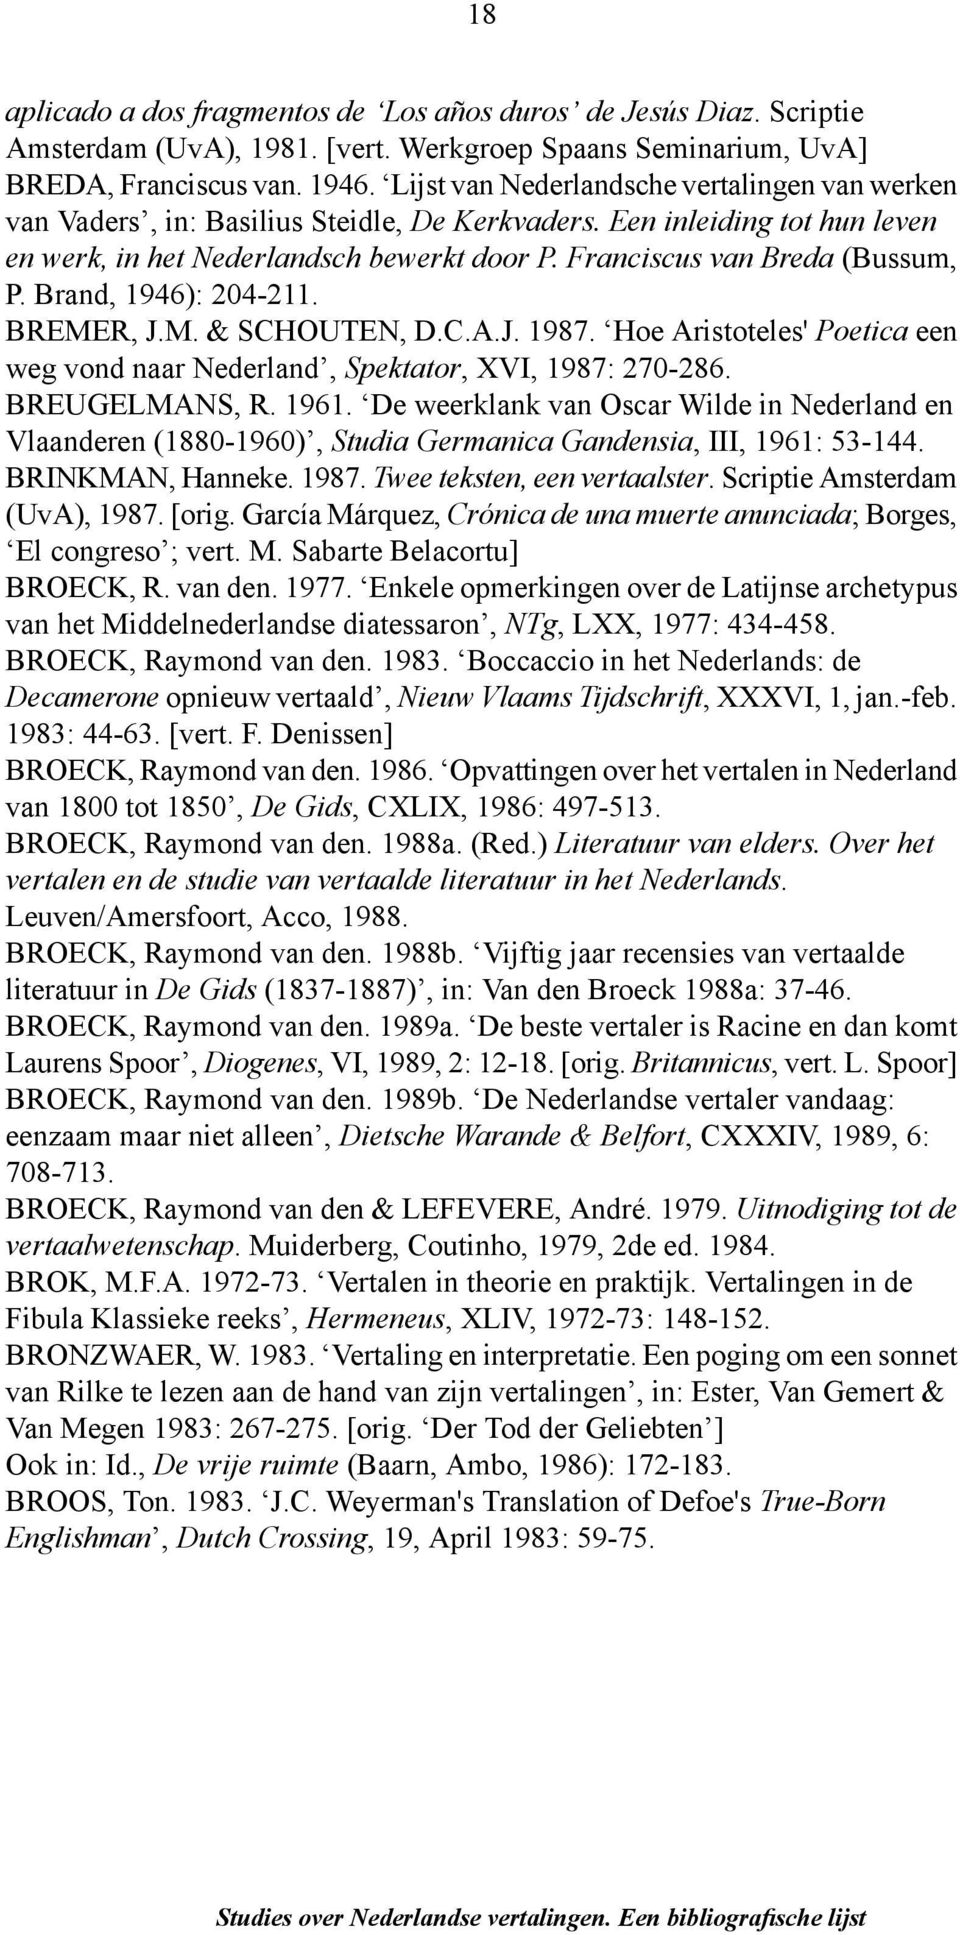 Franciscus van Breda (Bussum, P. Brand, 1946): 204-211. BREMER, J.M. & SCHOUTEN, D.C.A.J. 1987. Hoe Aristoteles' Poetica een weg vond naar Nederland, Spektator, XVI, 1987: 270-286. BREUGELMANS, R.